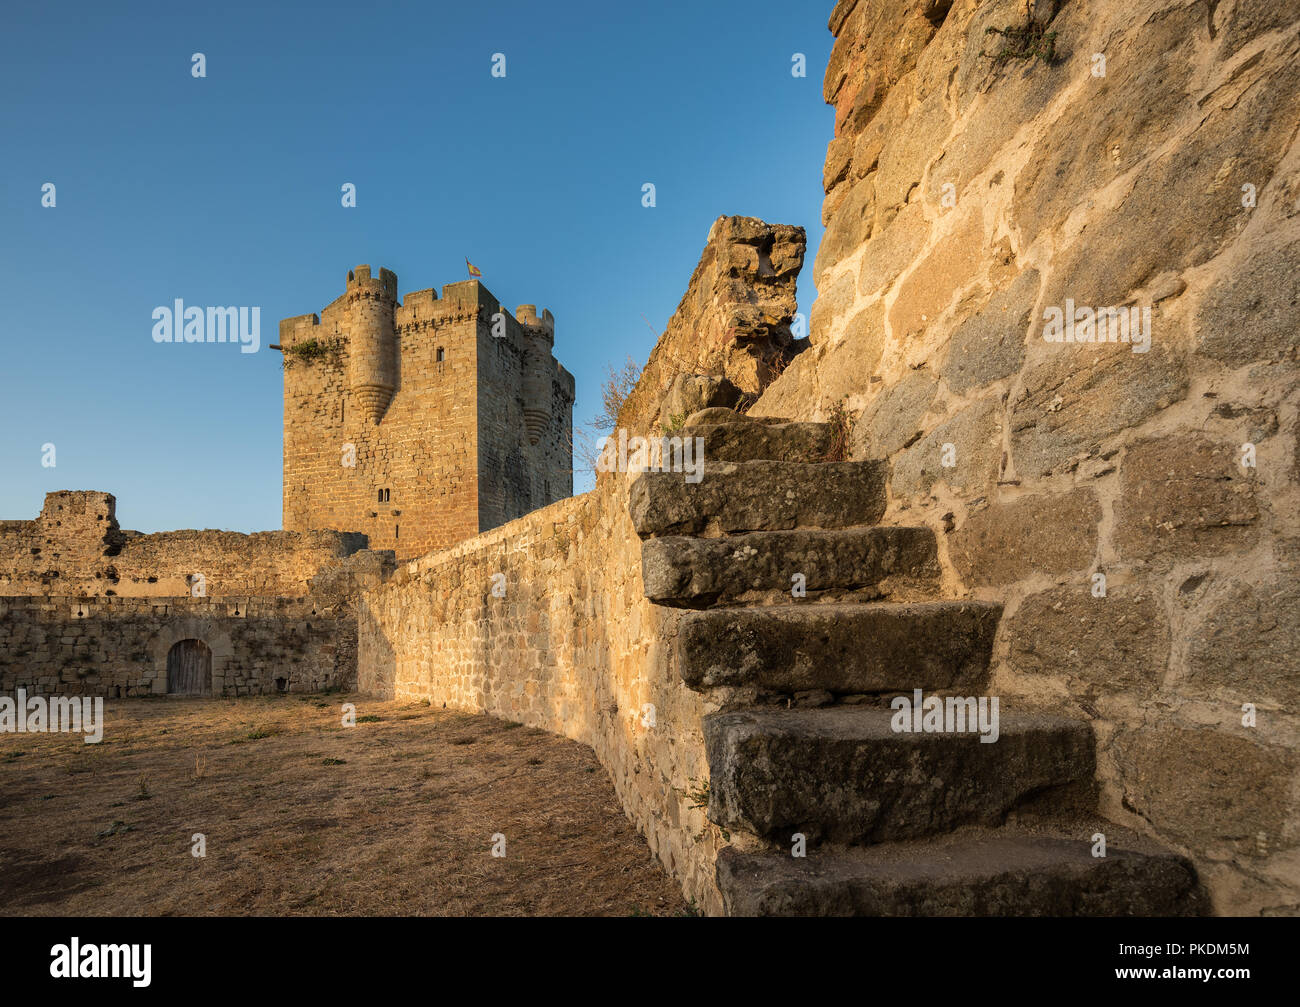 Ancient medieval castle in San Felices de los Gallegos. Spain. Stock Photo